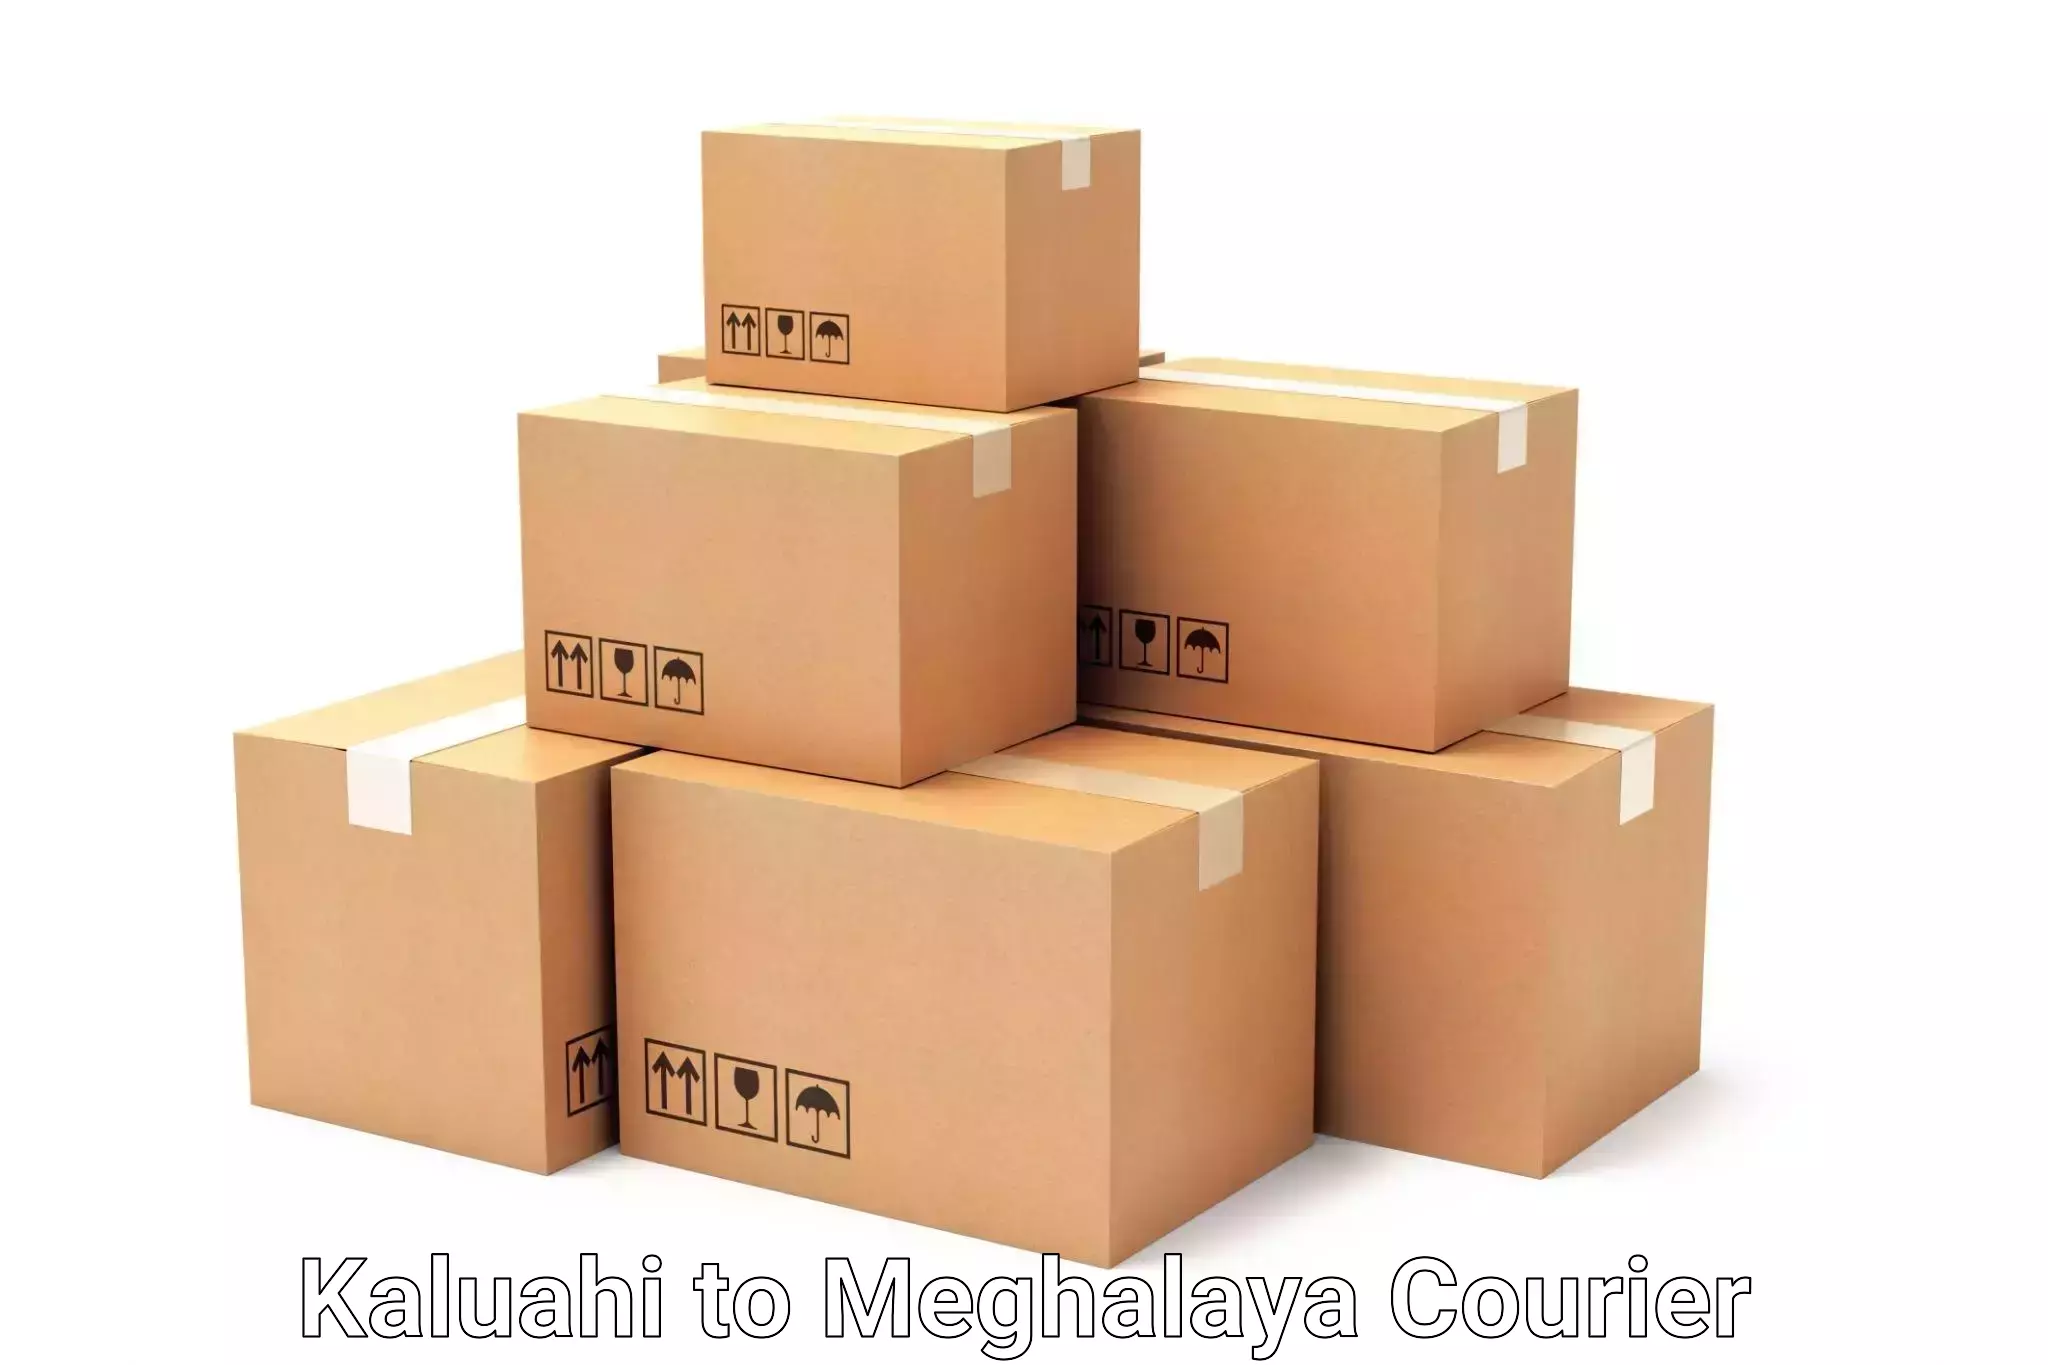 Affordable luggage shipping Kaluahi to Meghalaya